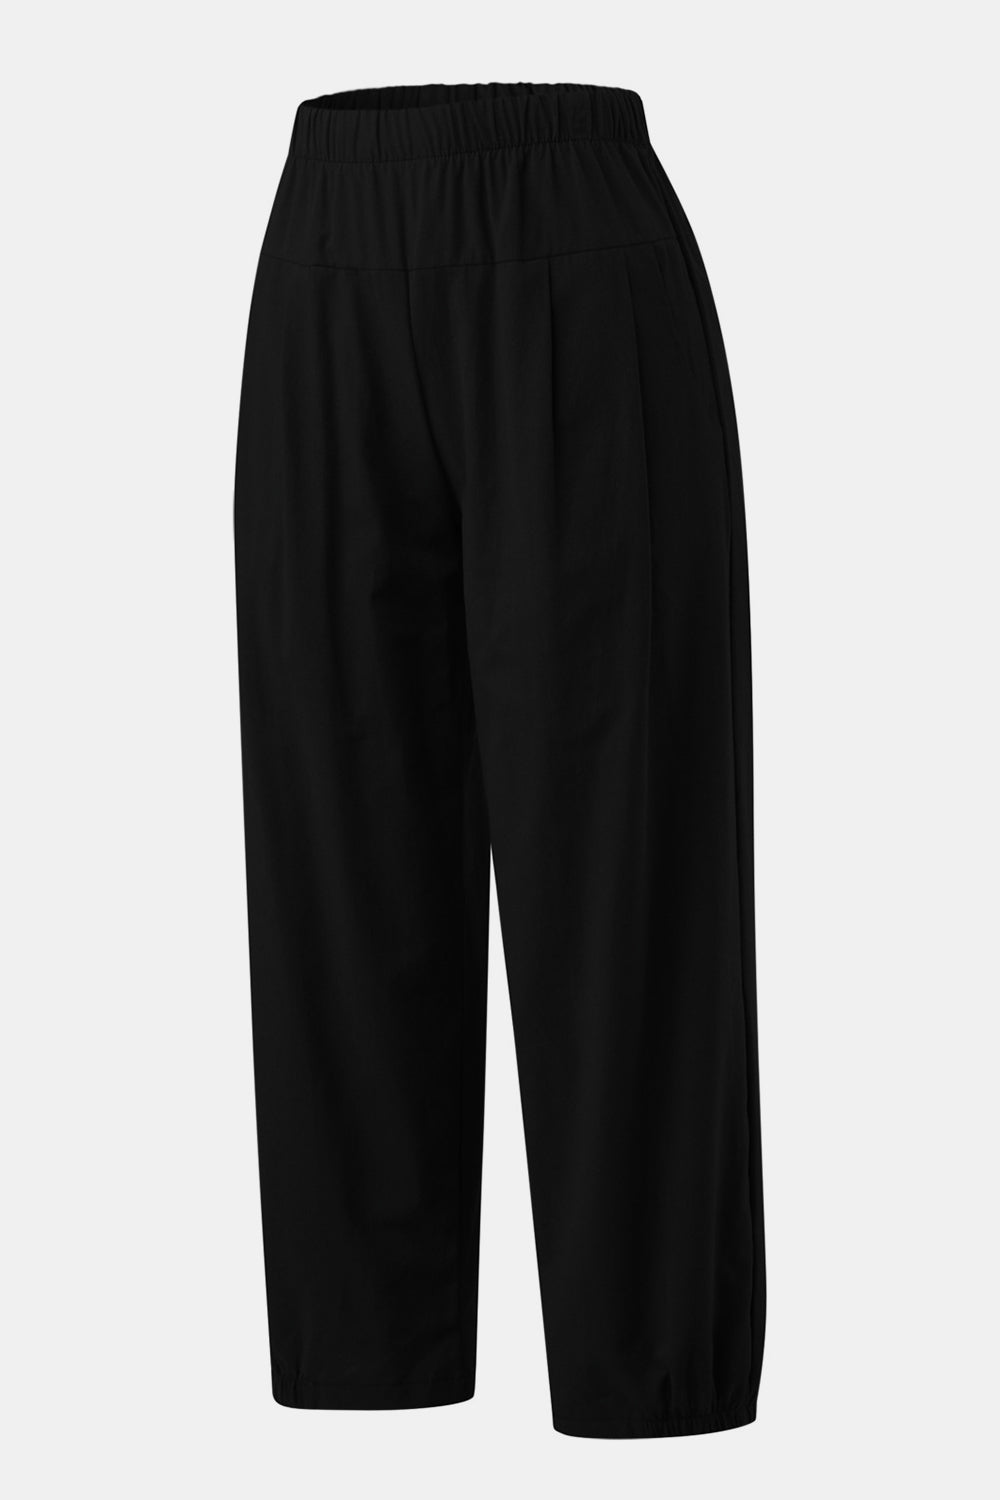 TEEK - Easy Elastic Waist Cropped Pants PANTS TEEK Trend Black S 